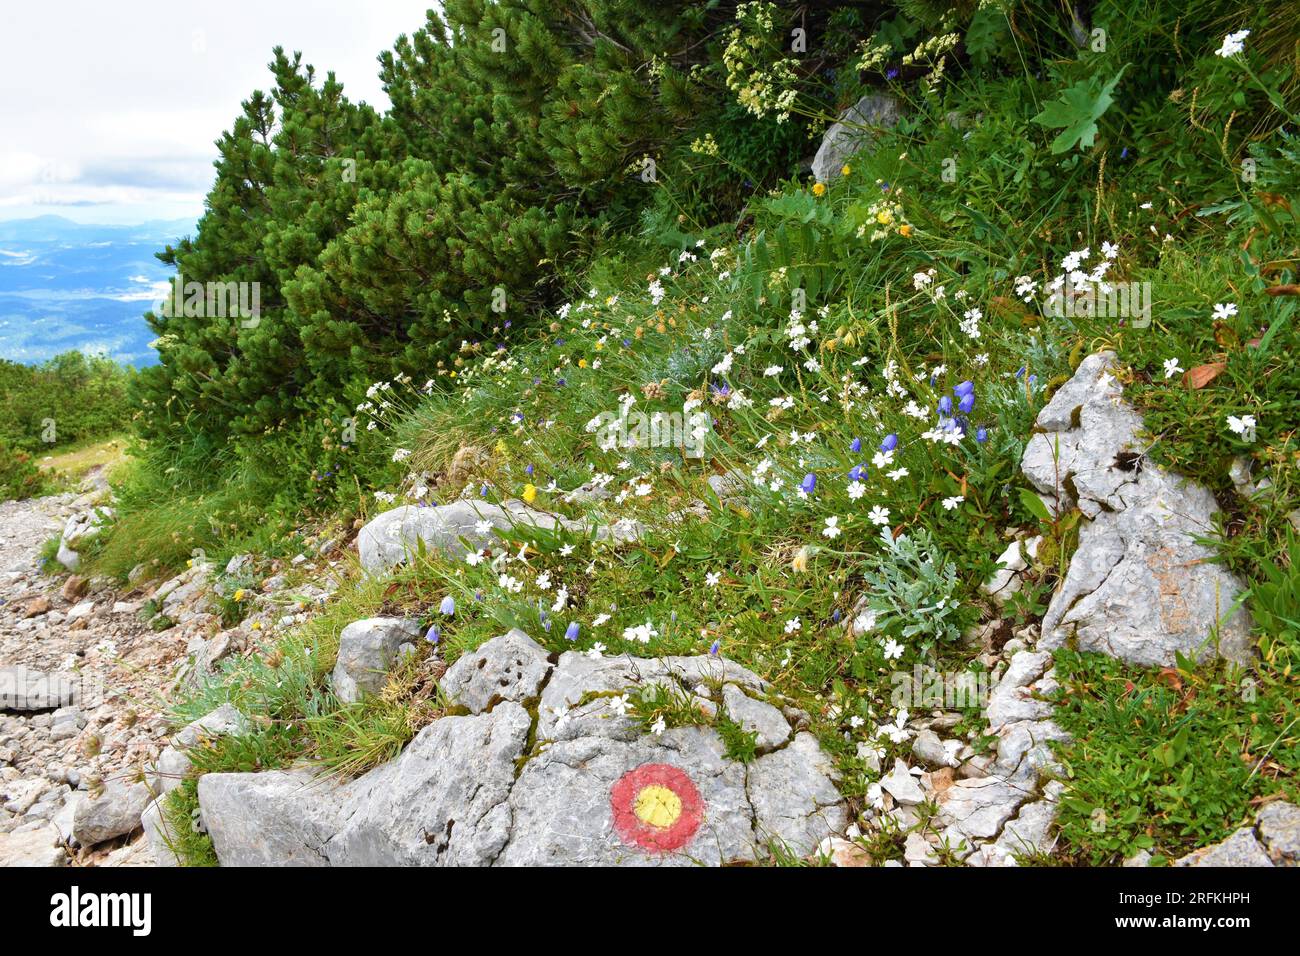 Wild garden with white Silene alpestris flowers next to the trail to Sneznik mountain in Slovenia Stock Photo